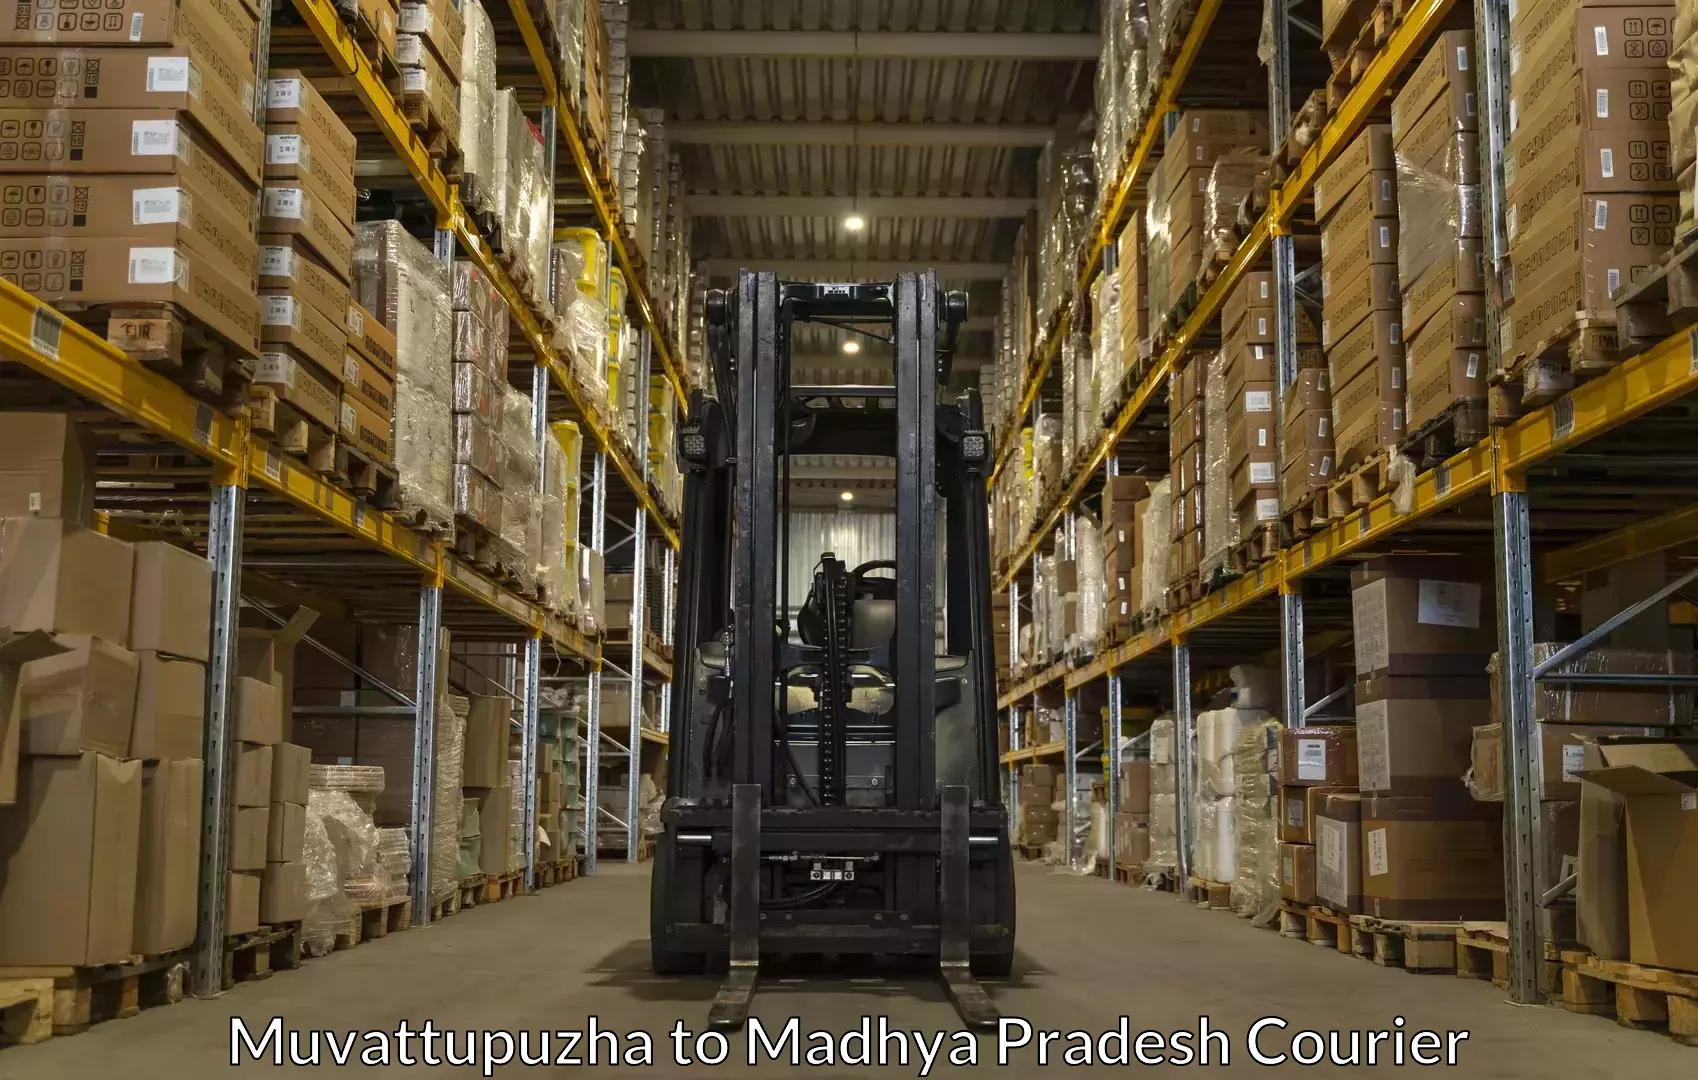 Baggage shipping experience Muvattupuzha to Madhya Pradesh